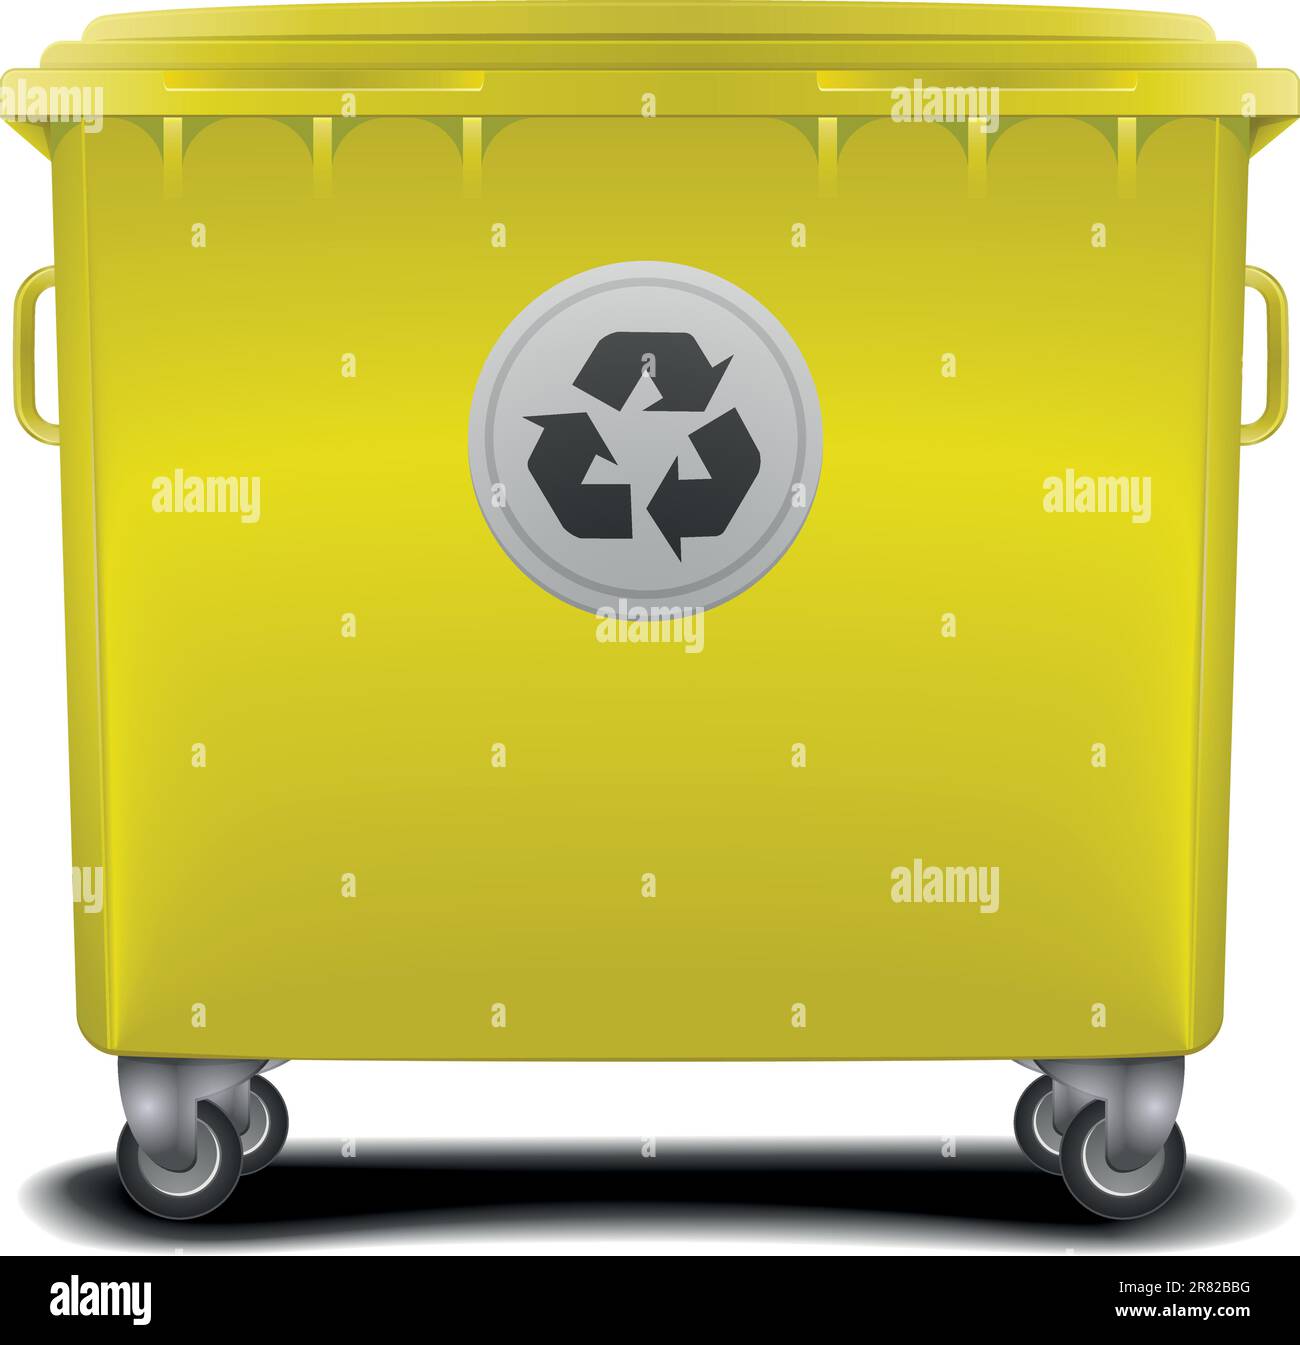 Contenedores de reciclaje para papel, vidrio y productos orgánicos, con el  símbolo de reciclaje en la parte superior en color azul, verde y amarillo.